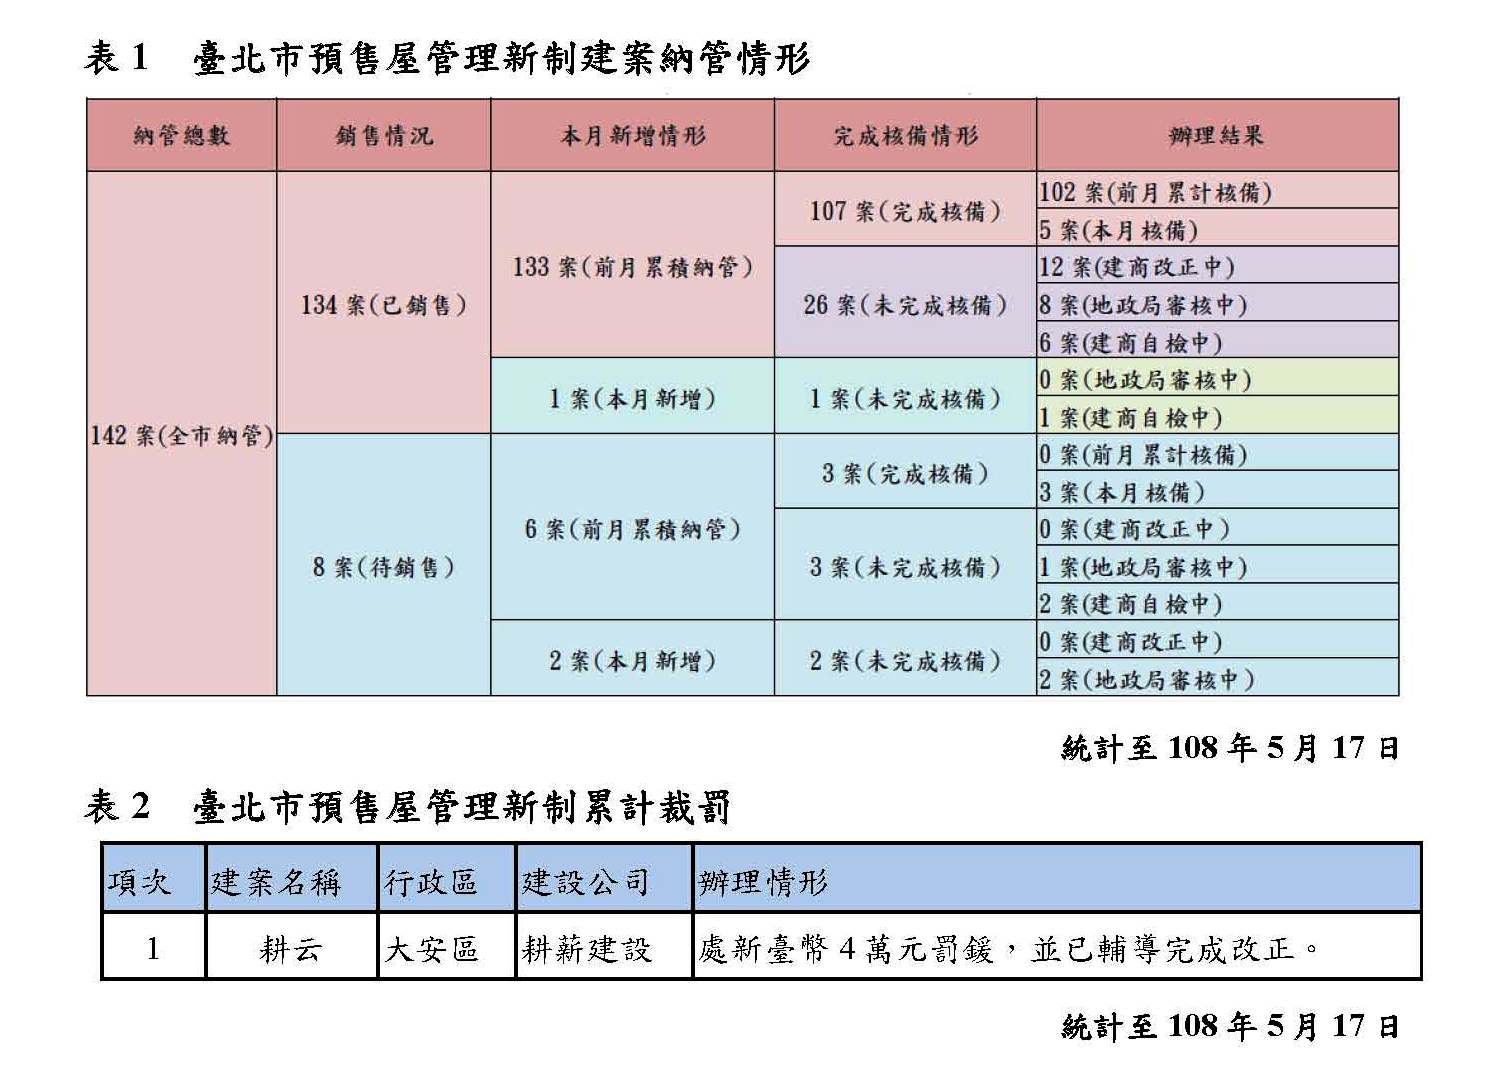 表1是臺北市預售屋管理新制建案納管情形表格(統計至108年5月17日)及表2是臺北市預售屋管理新制累計裁罰名單表格(統計至108年5月17日)